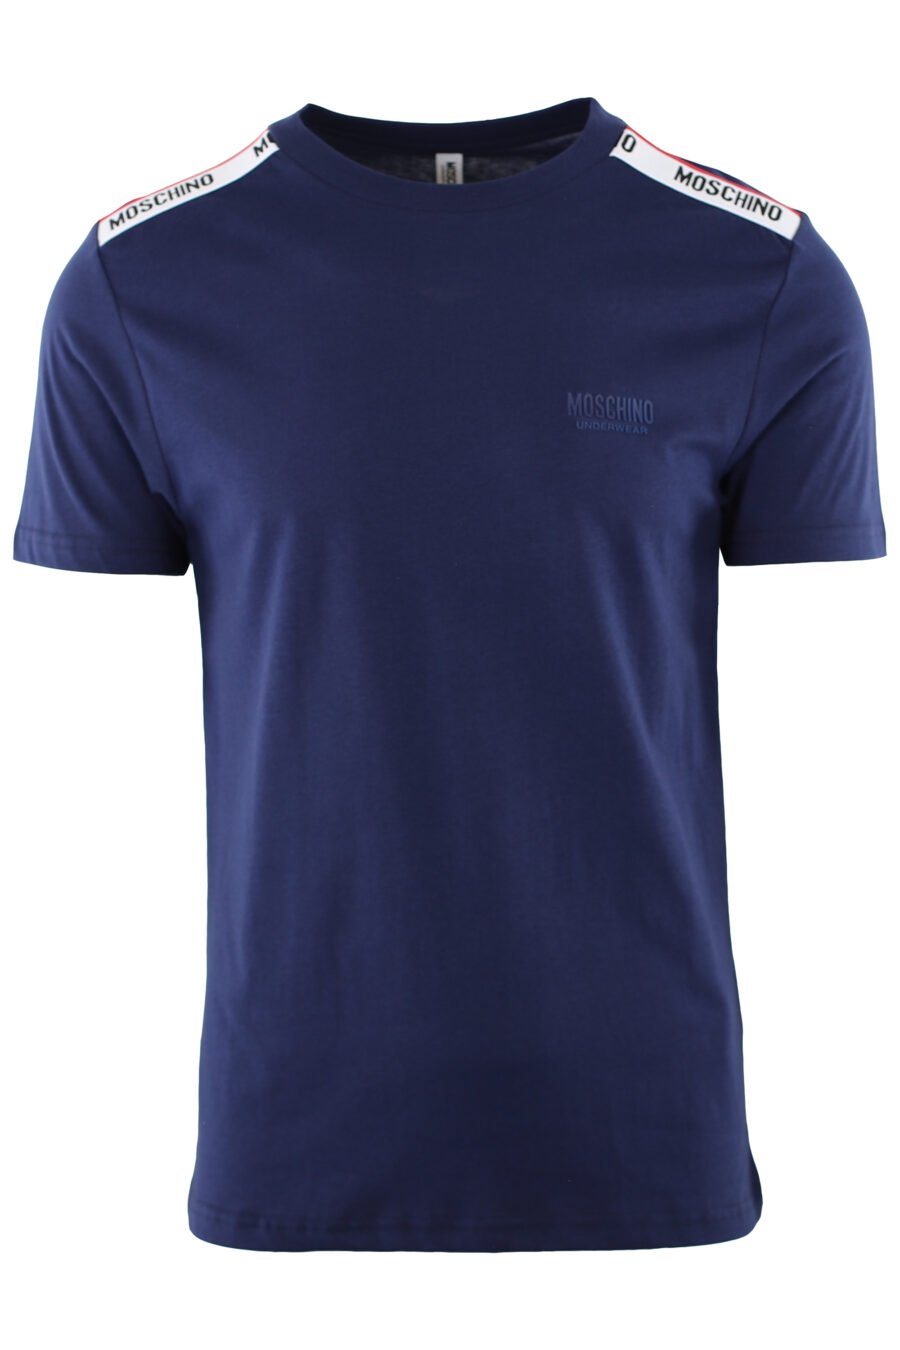 Camiseta azul con logotipo en cinta hombros - IMG 7412